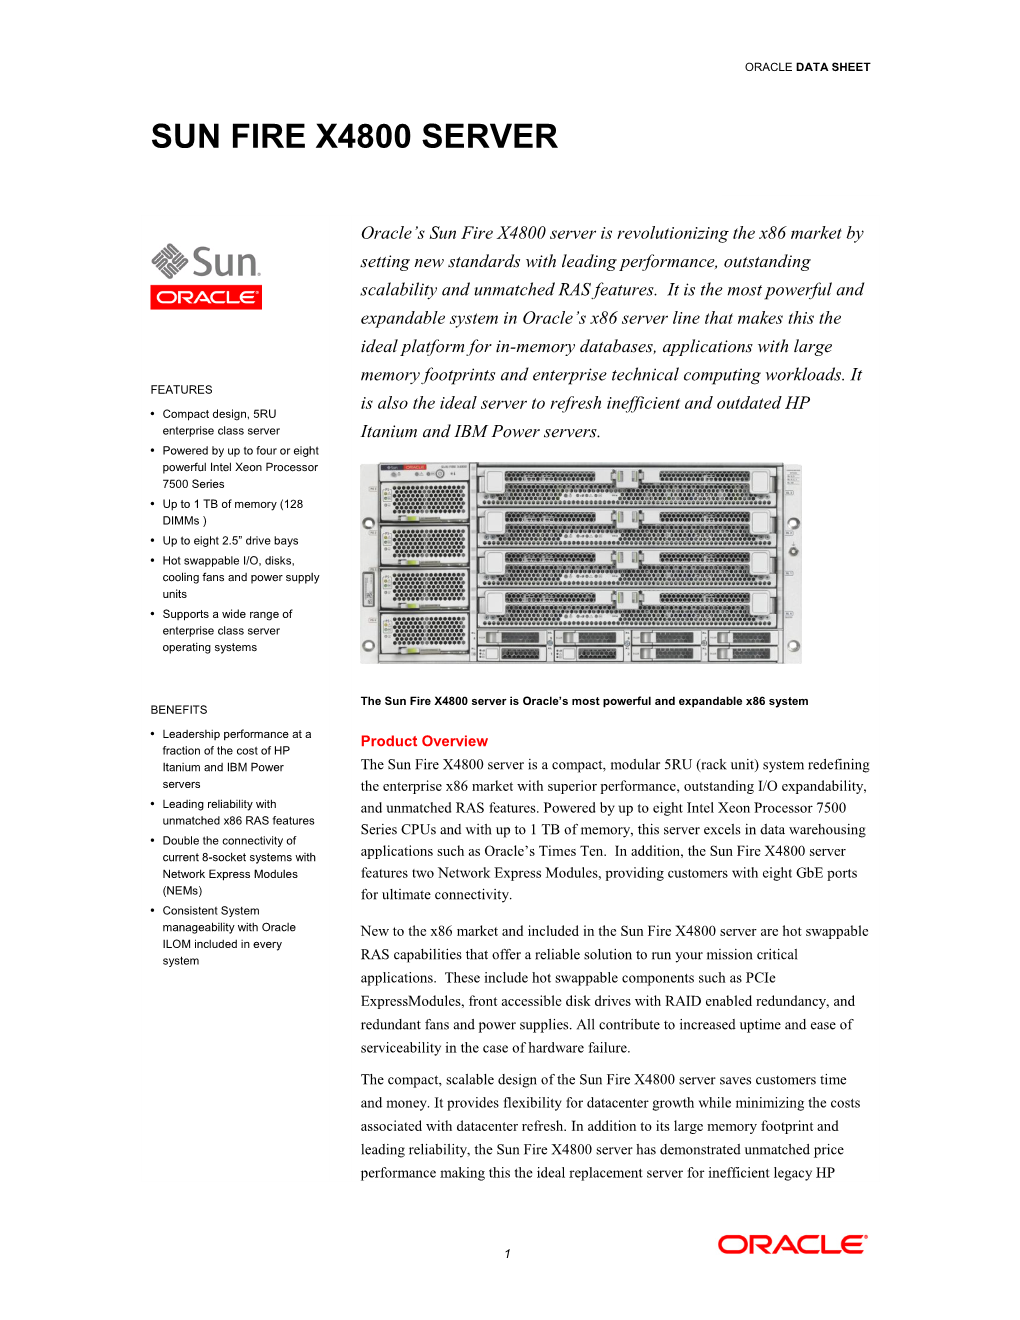 Sun Fire X4800 Server Data Sheet